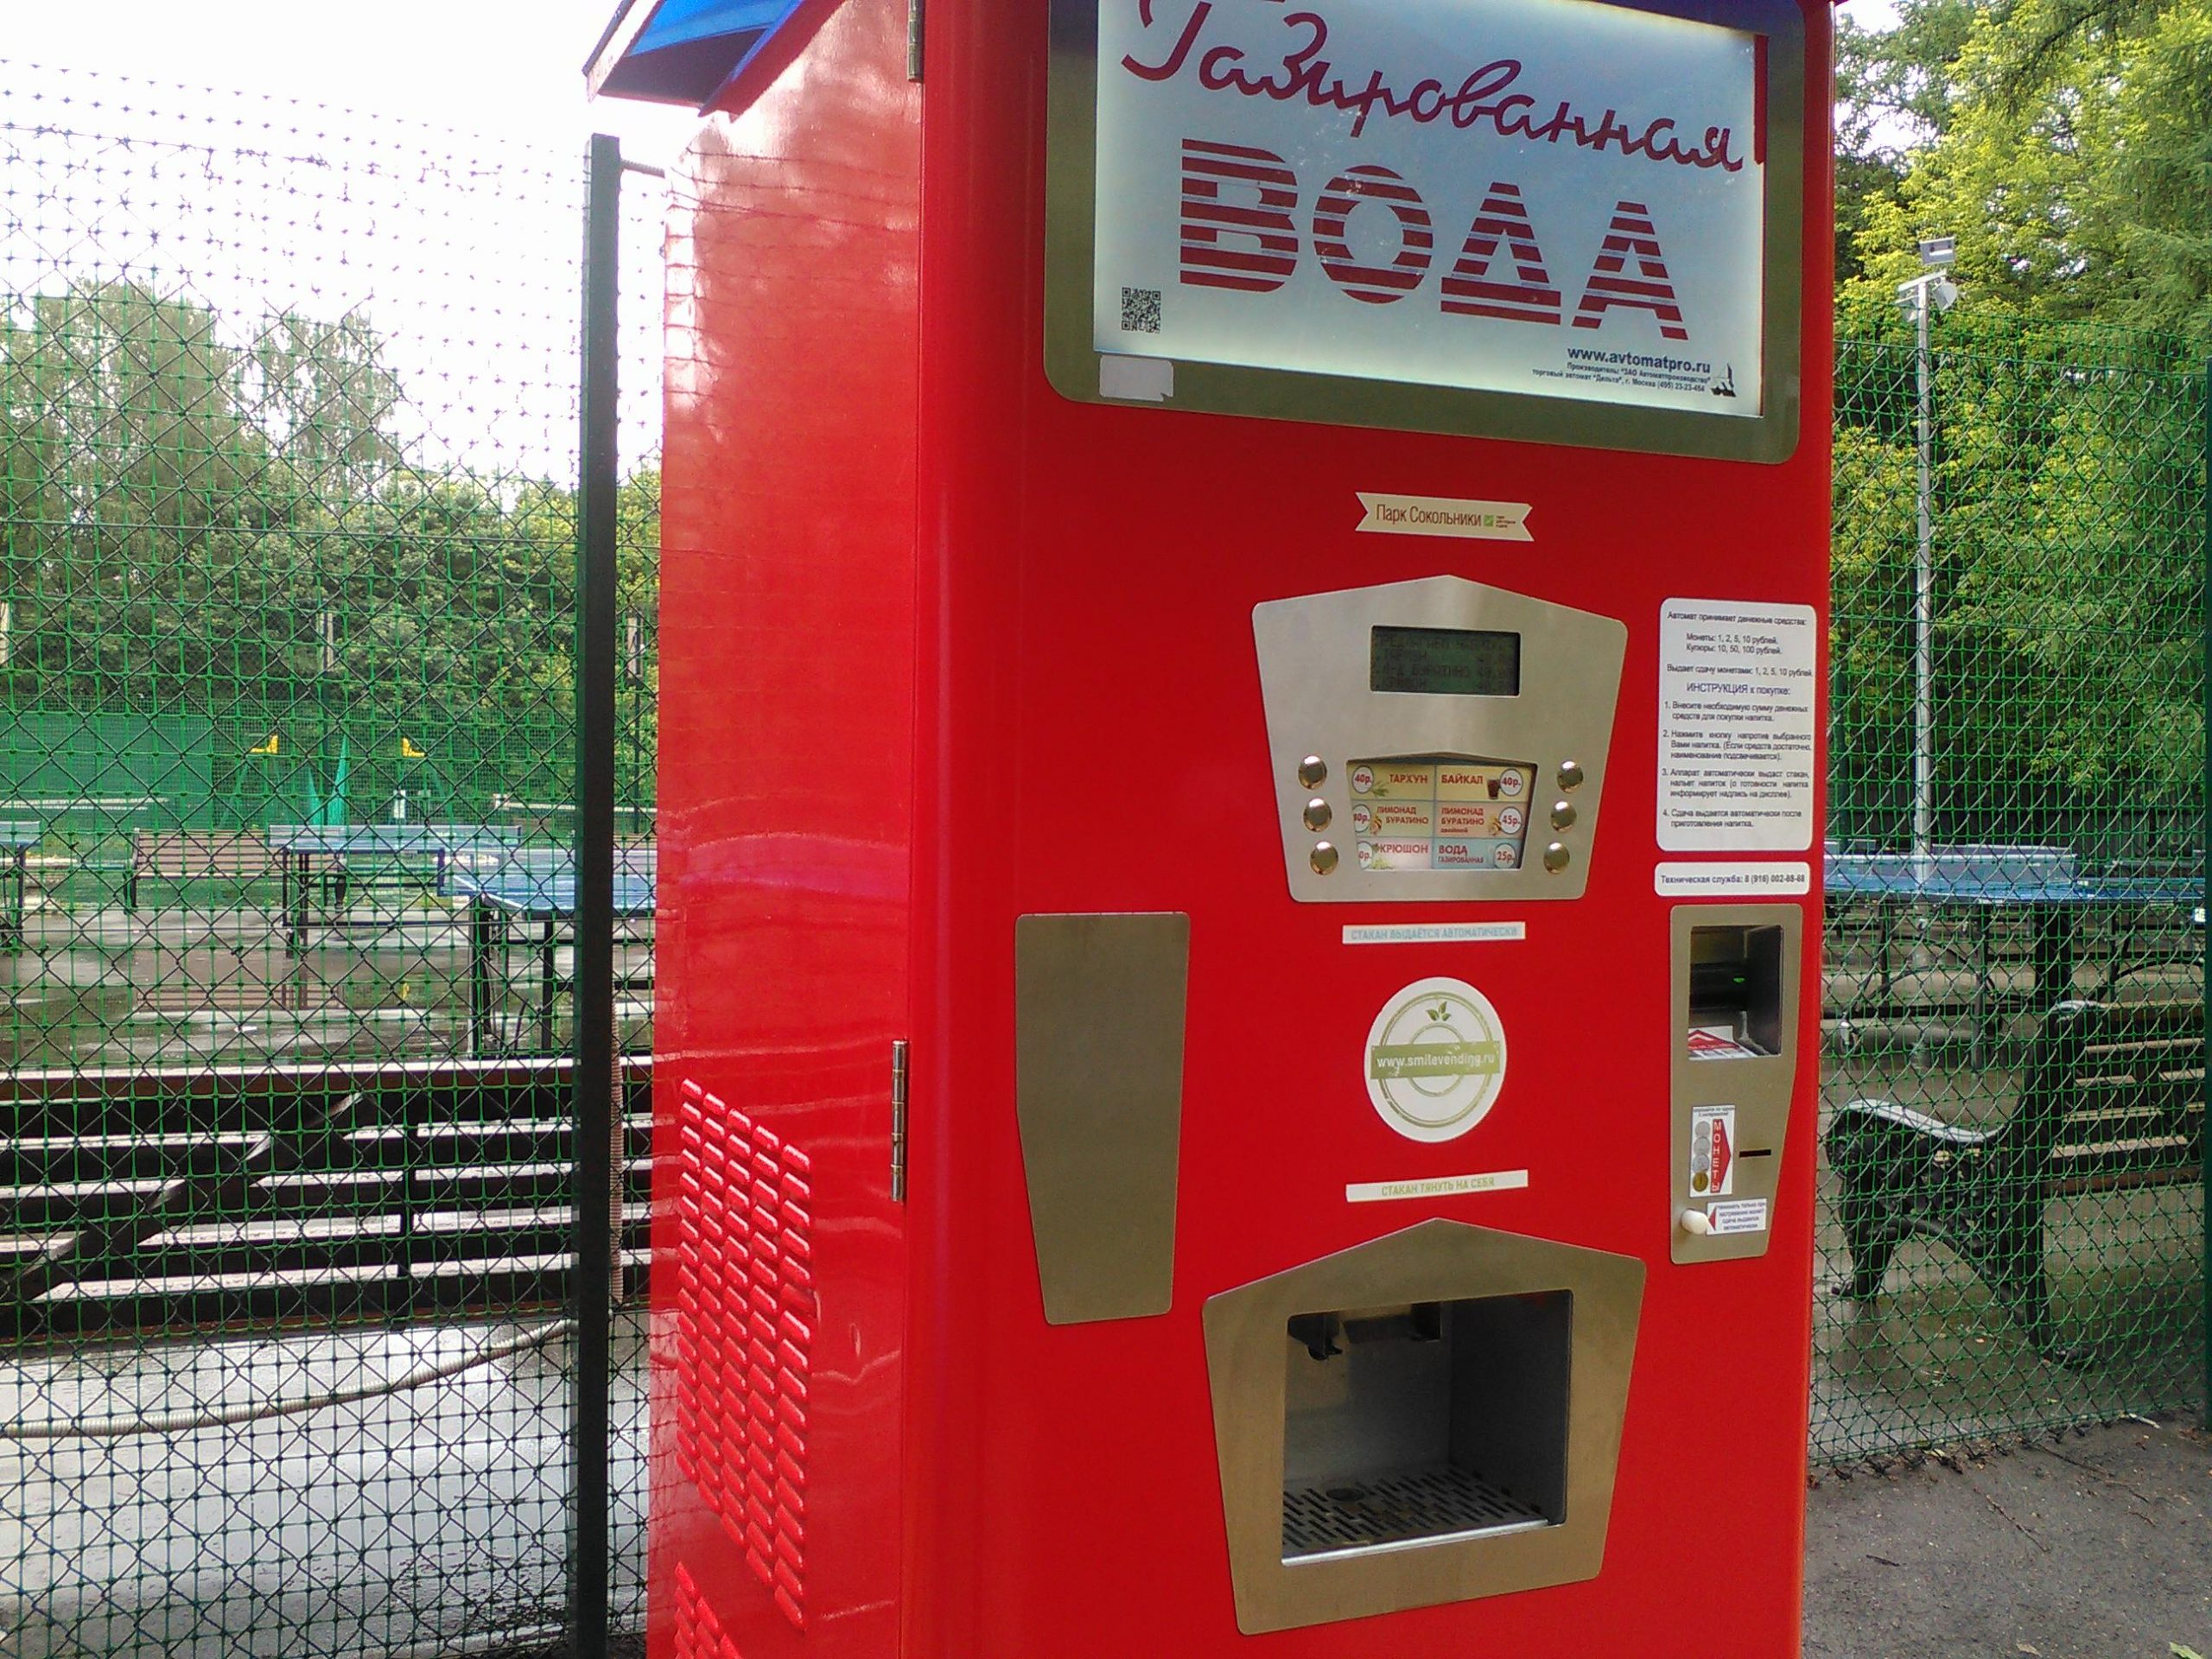 Как выглядели вендинговые аппараты по продаже газированной воды в Ростове на Дону?